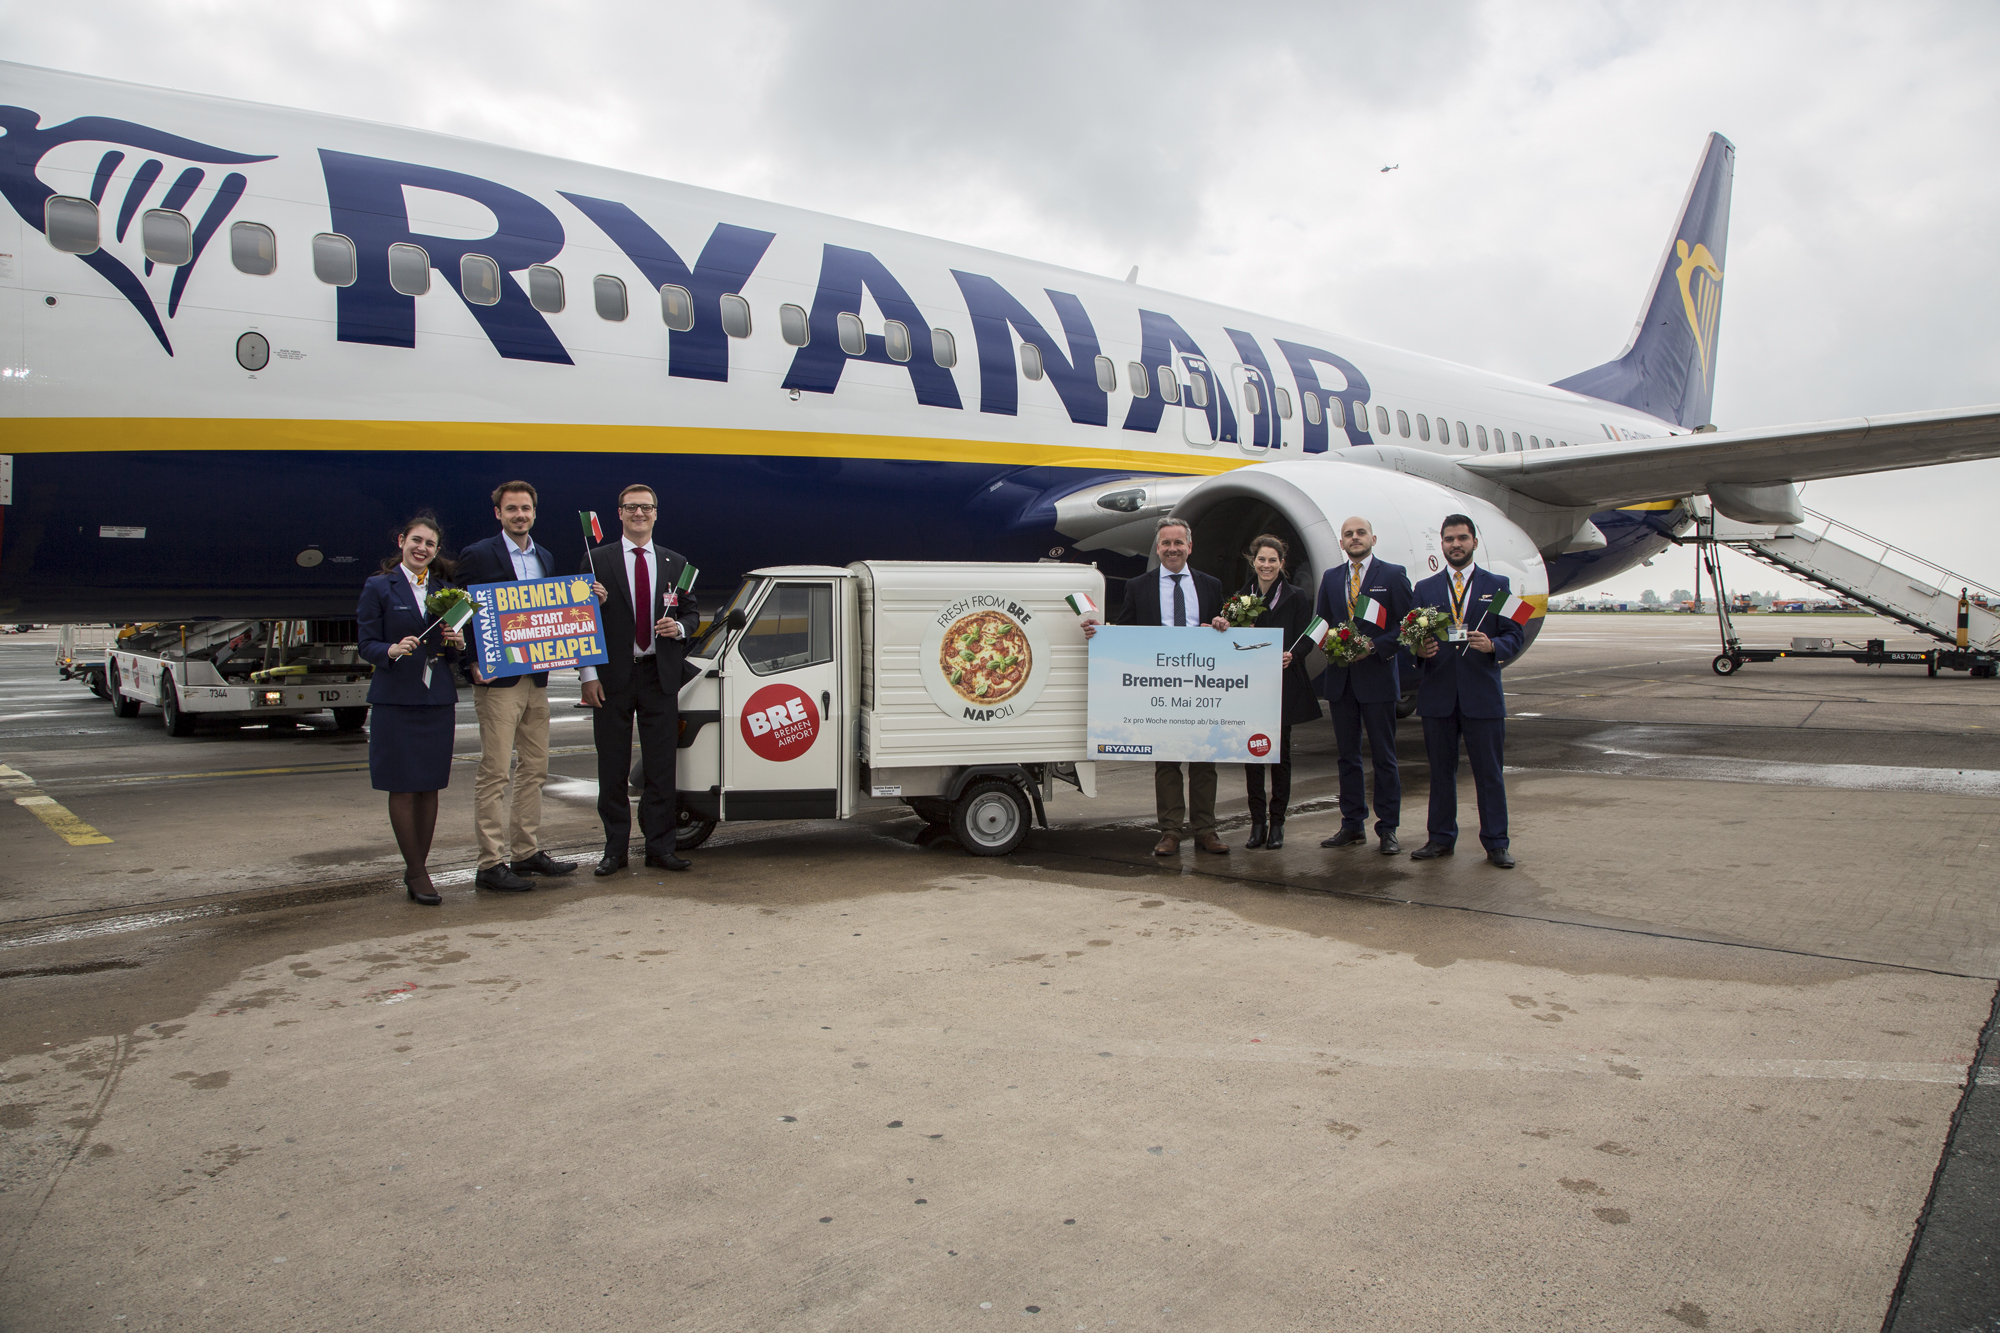 Ryanair Startet Sommerflugplan 2017 Für Bremen Und Feiert Erstflug Nach Neapel